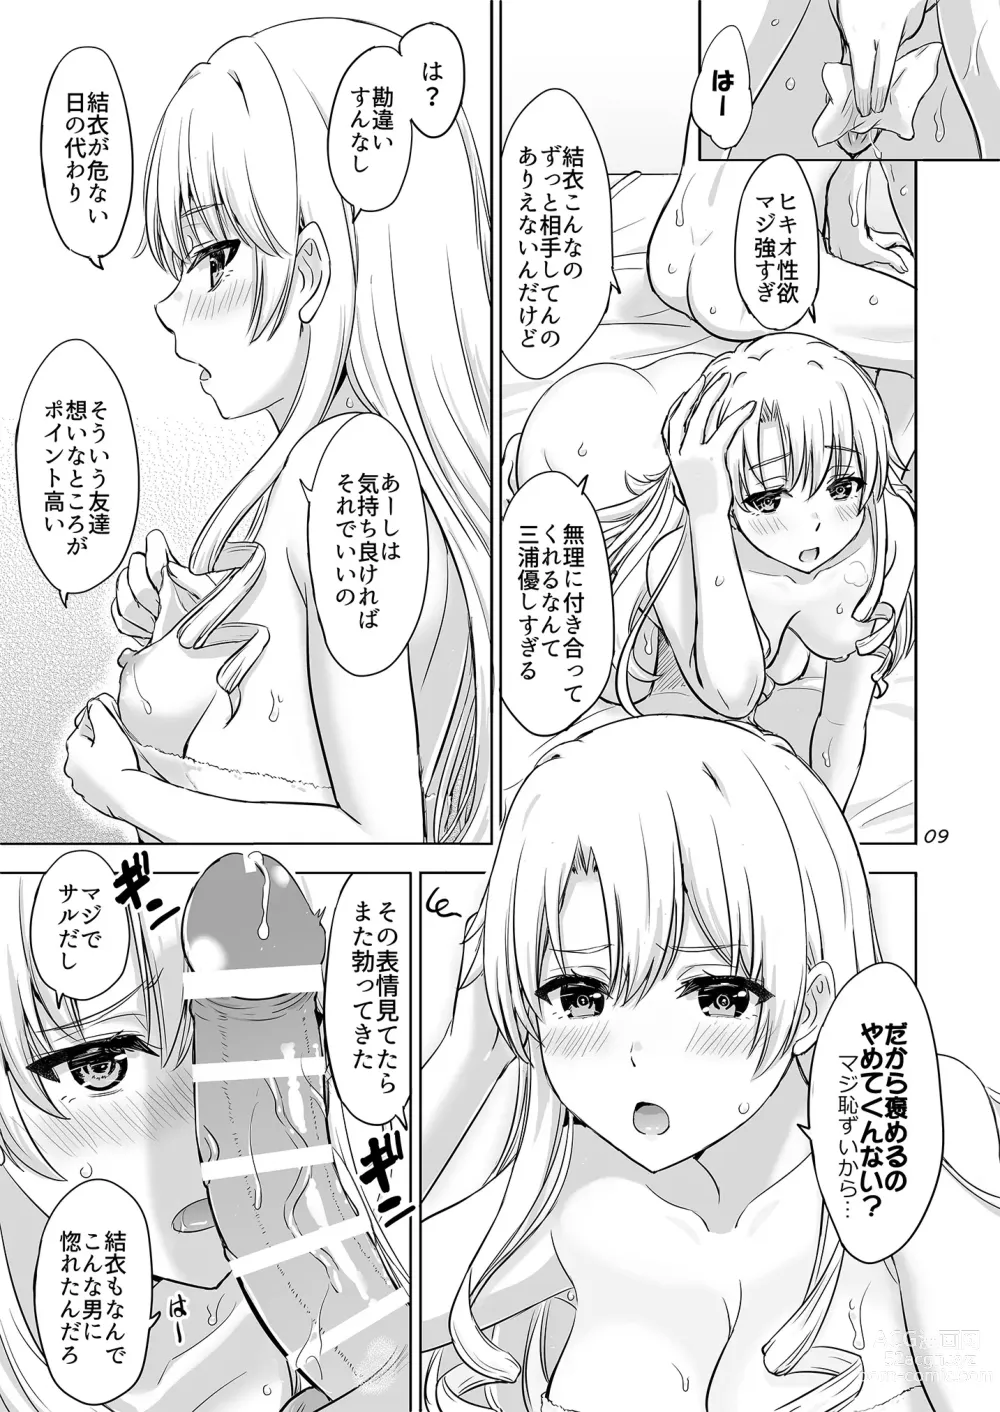 Page 8 of doujinshi Dokyusei-tachi to no Sukoshi Ibitsu na Nikutai Kankei. - Yumiko miura & Saki kawasaki each have sex with Hachiman.